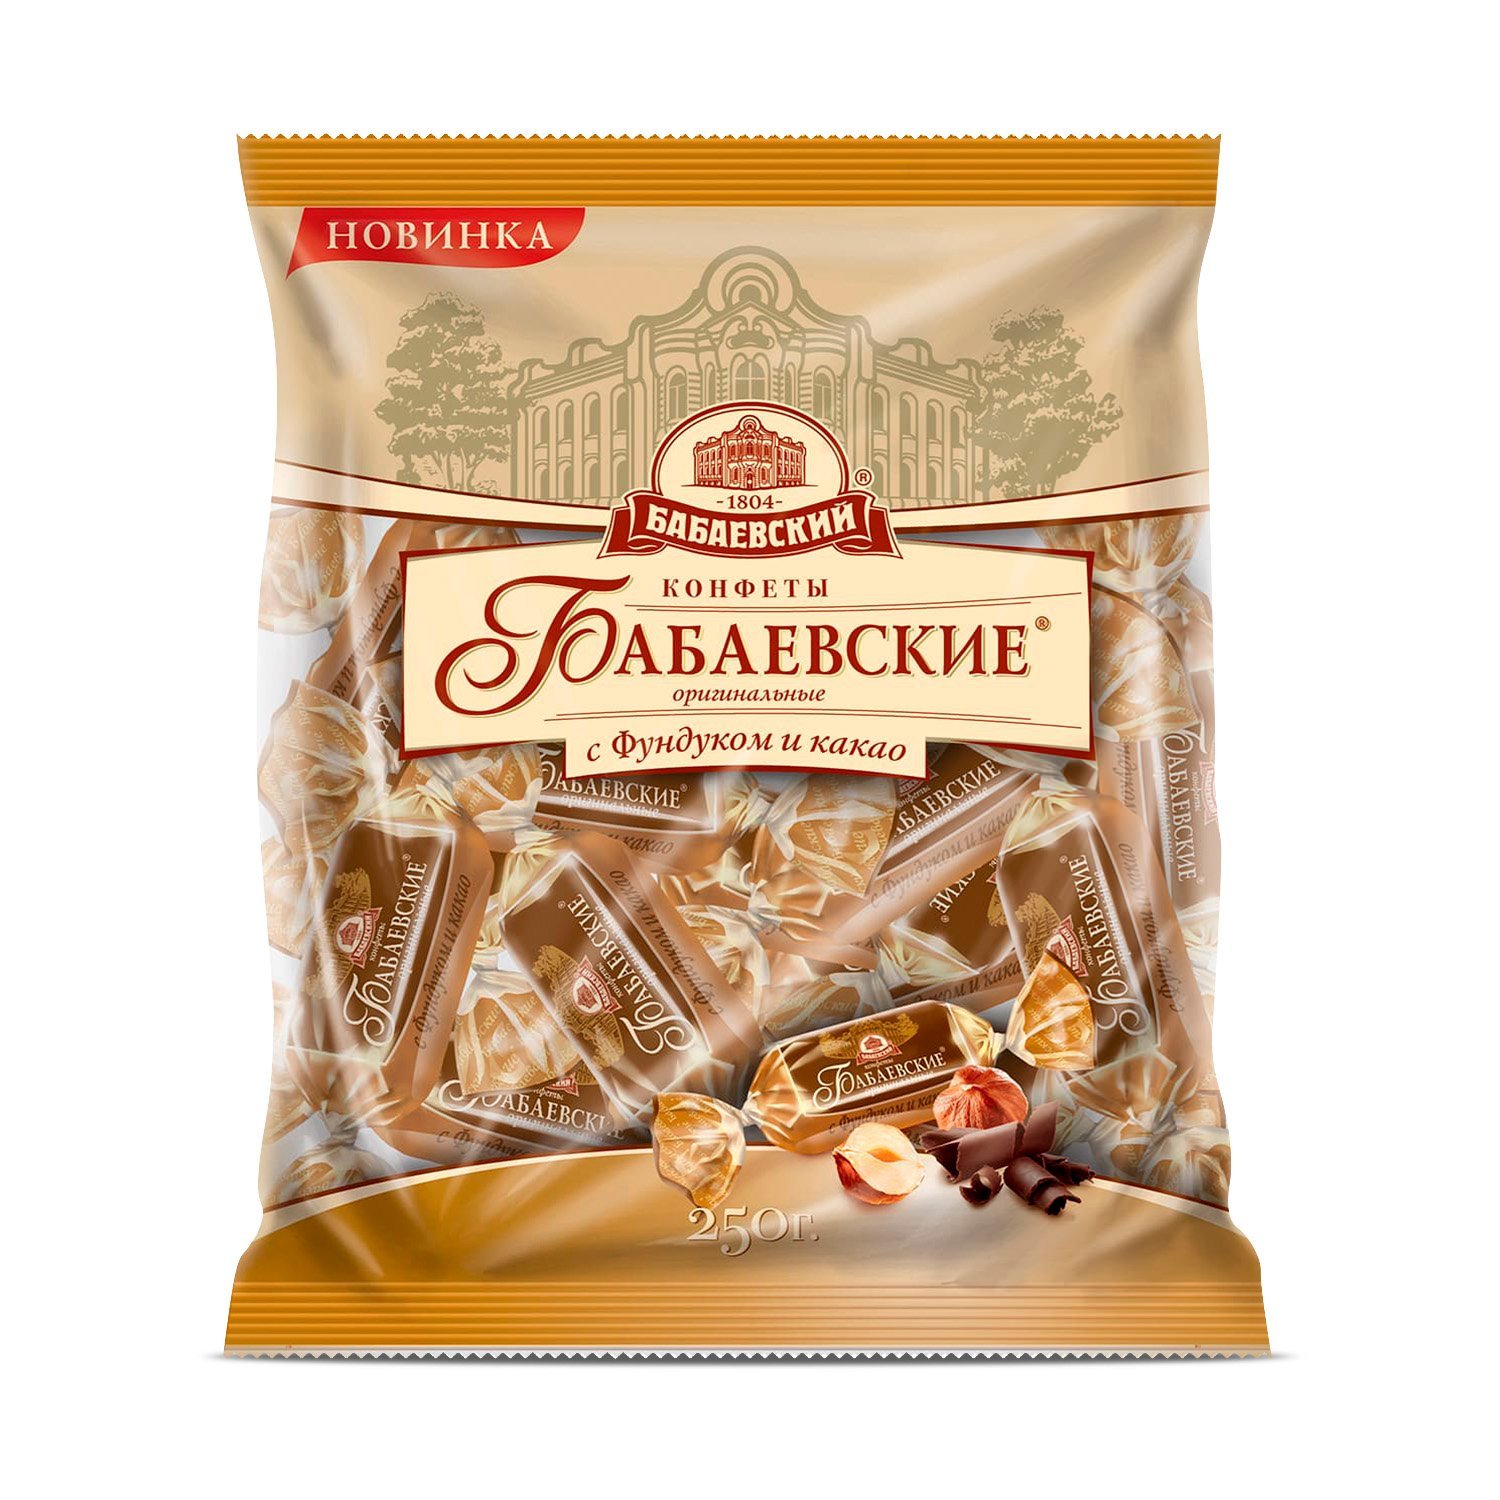 Конфеты Бабаевские Оригинальные с фундуком и какао,200 грамм